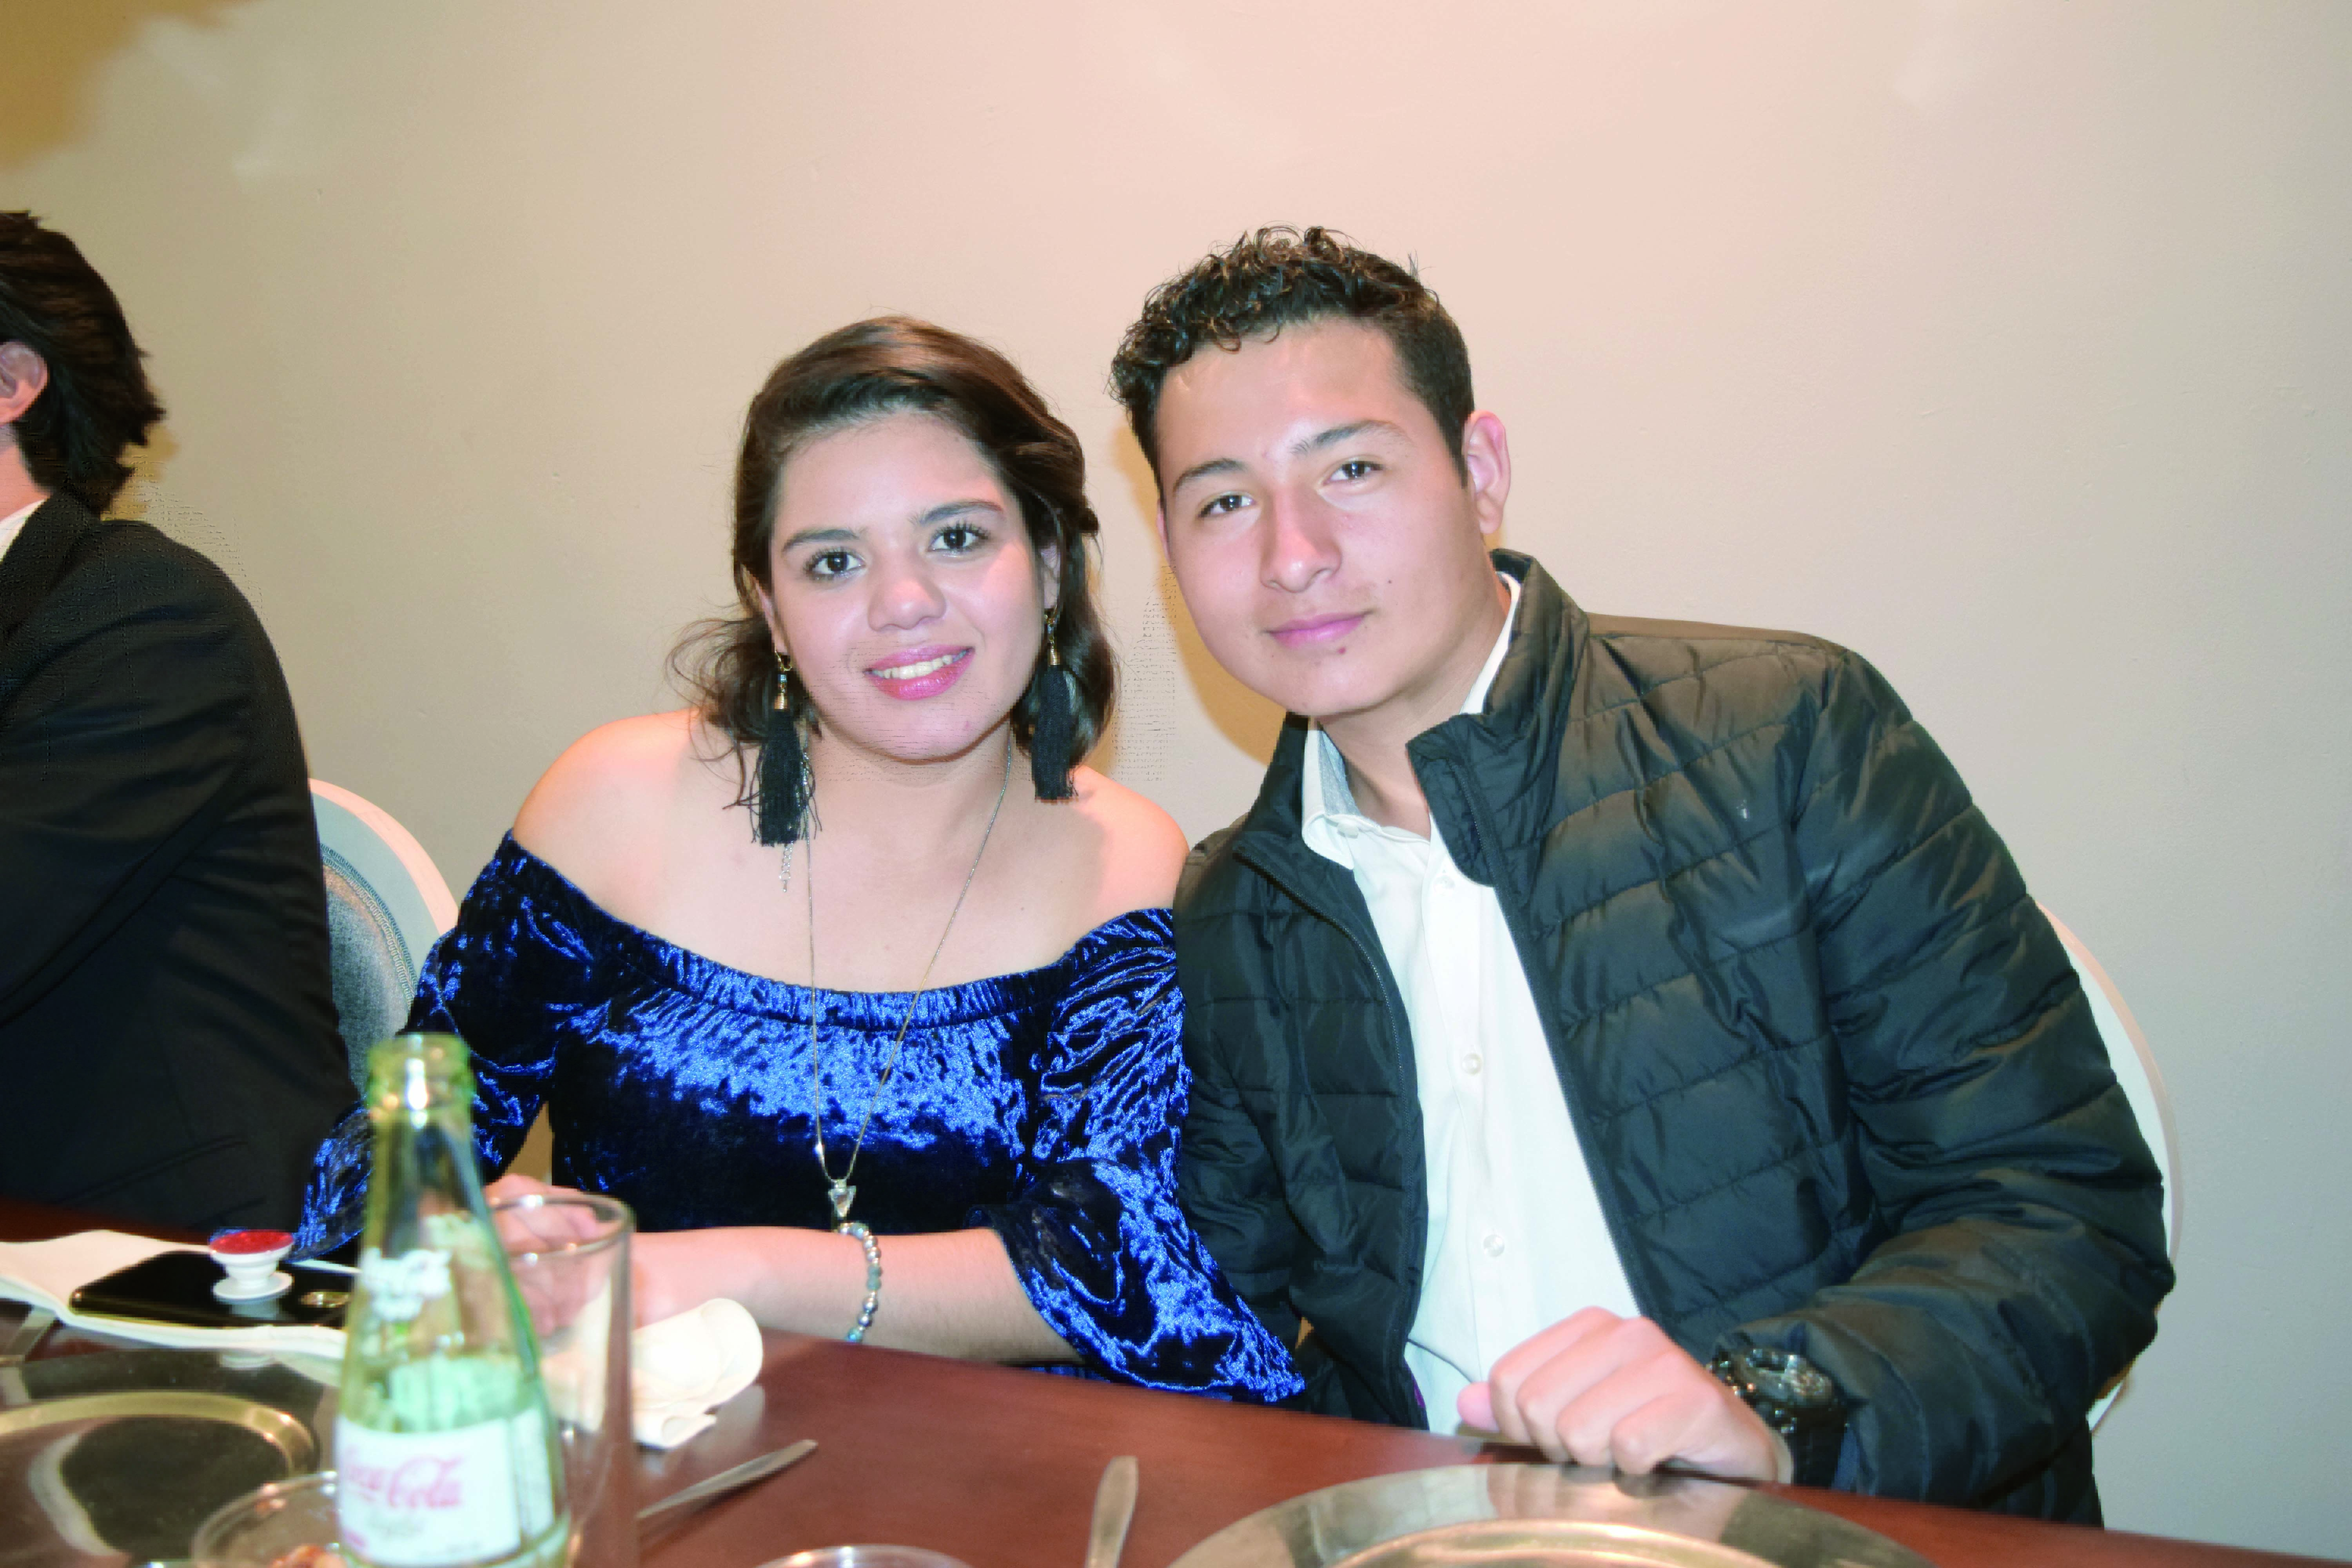 Lorelia & Juan celebran sus bodas de plata